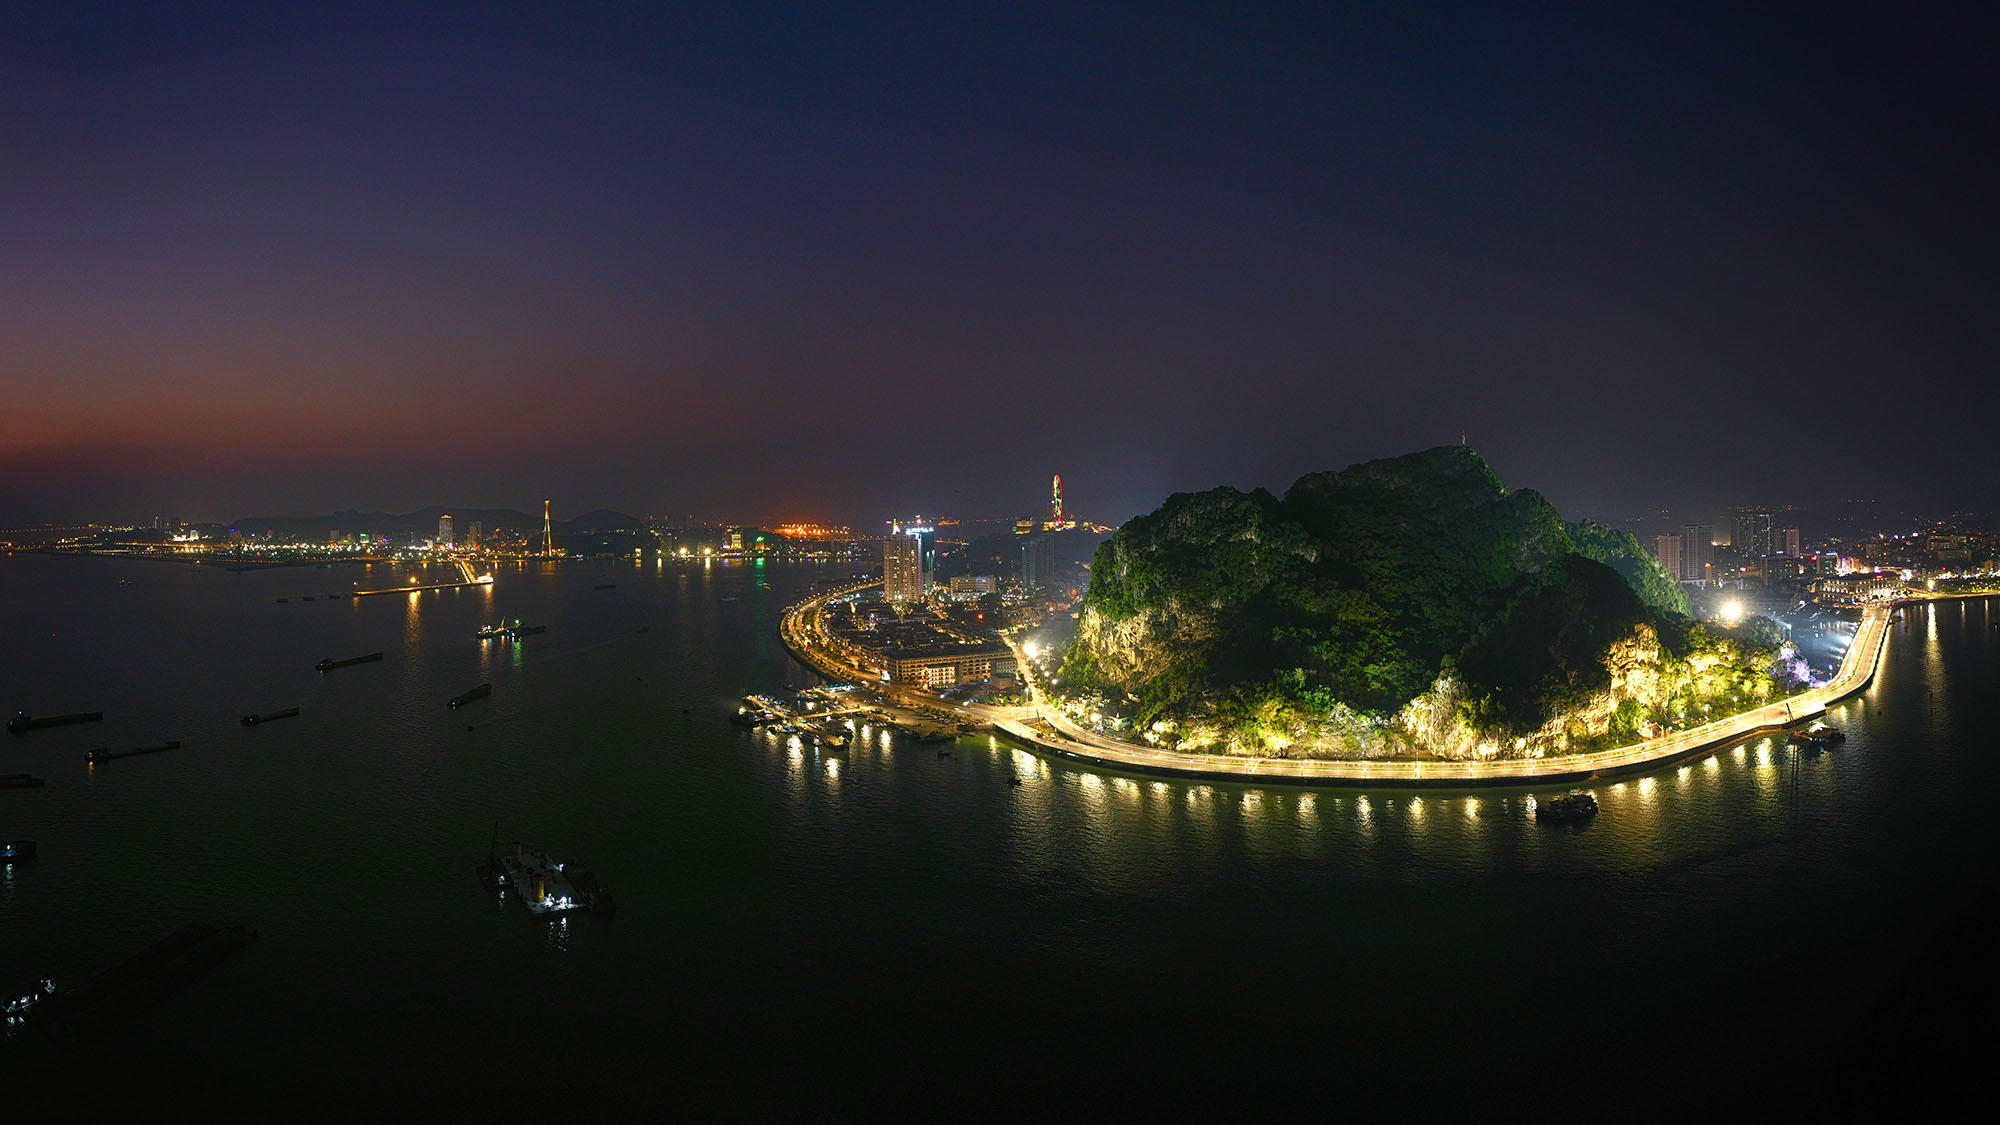 Núi Bài Thơ rực sáng khi đêm về sẽ trở thành điểm đến hấp dẫn và góp phần khai thác tiềm năng du lịch của thành phố Hạ Long nói riêng và tỉnh Quảng Ninh nói chung